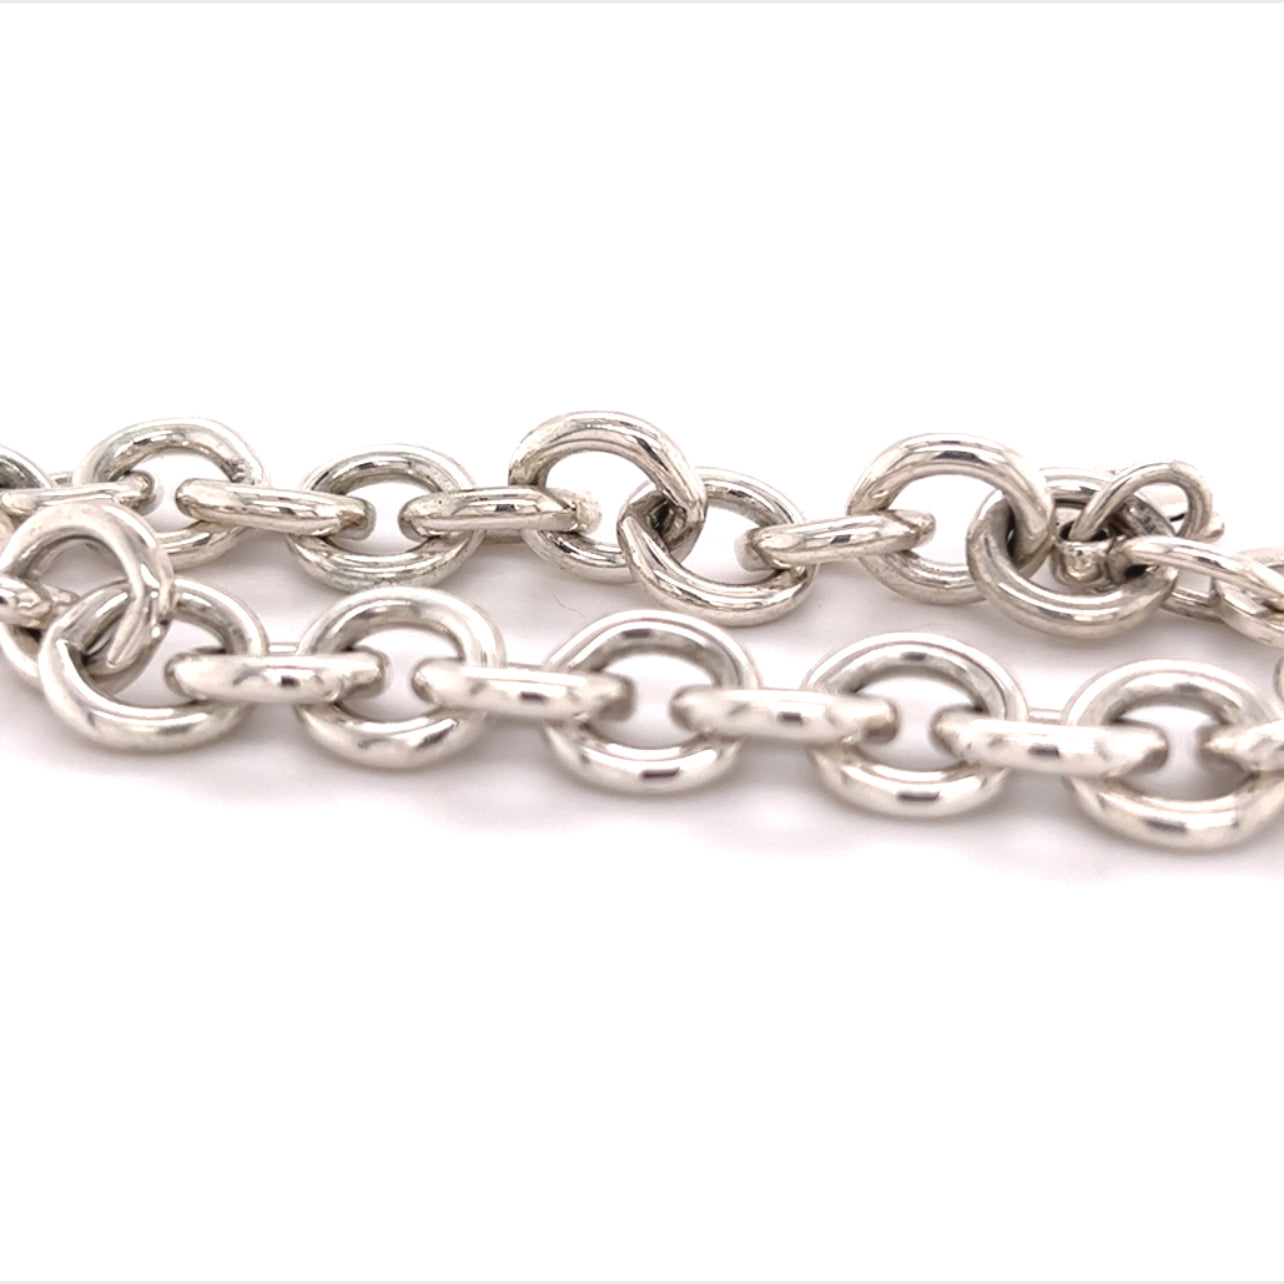 Tiffany & Co Estate Heart Charm Bracelet Sterling Silver 7.5" 36 Grams TIF254 - Certified Estate Jewelry